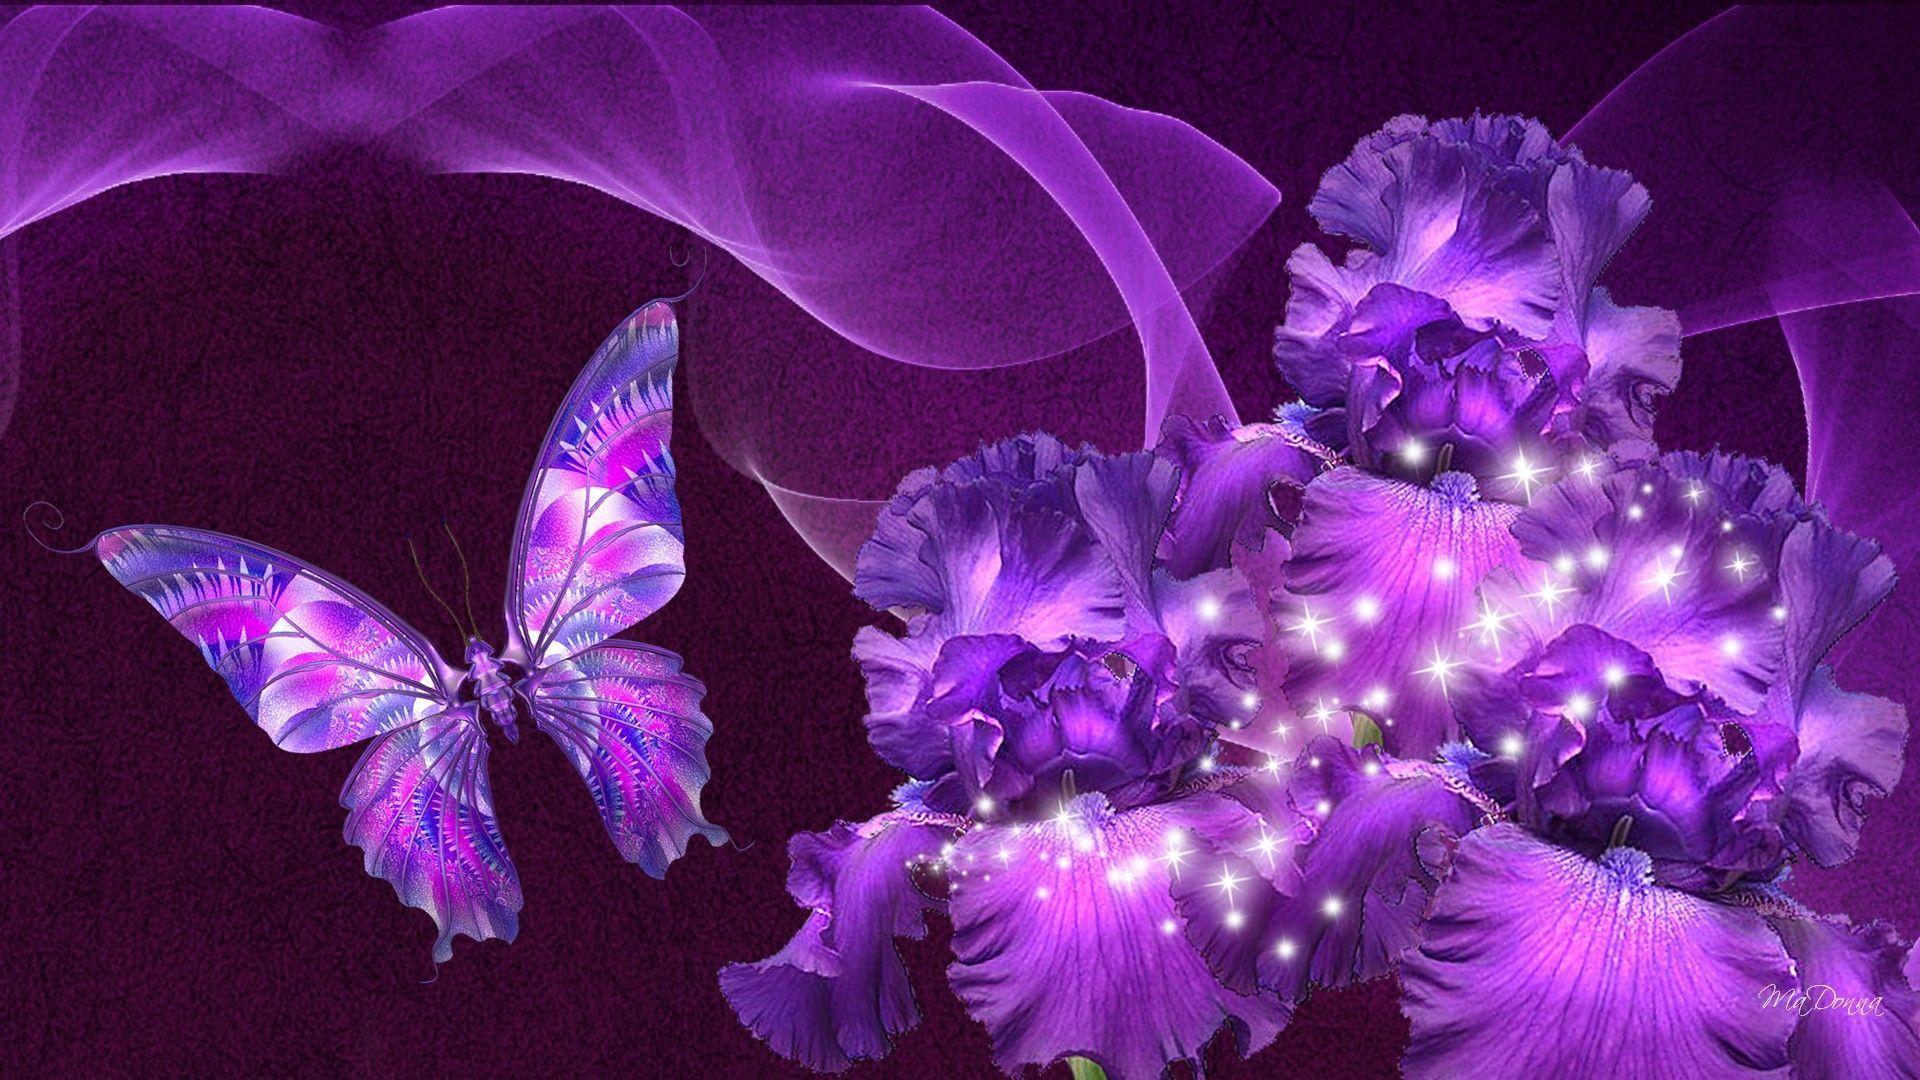 Wallpaper Nature Beauty Purple 8 Entertainment Source